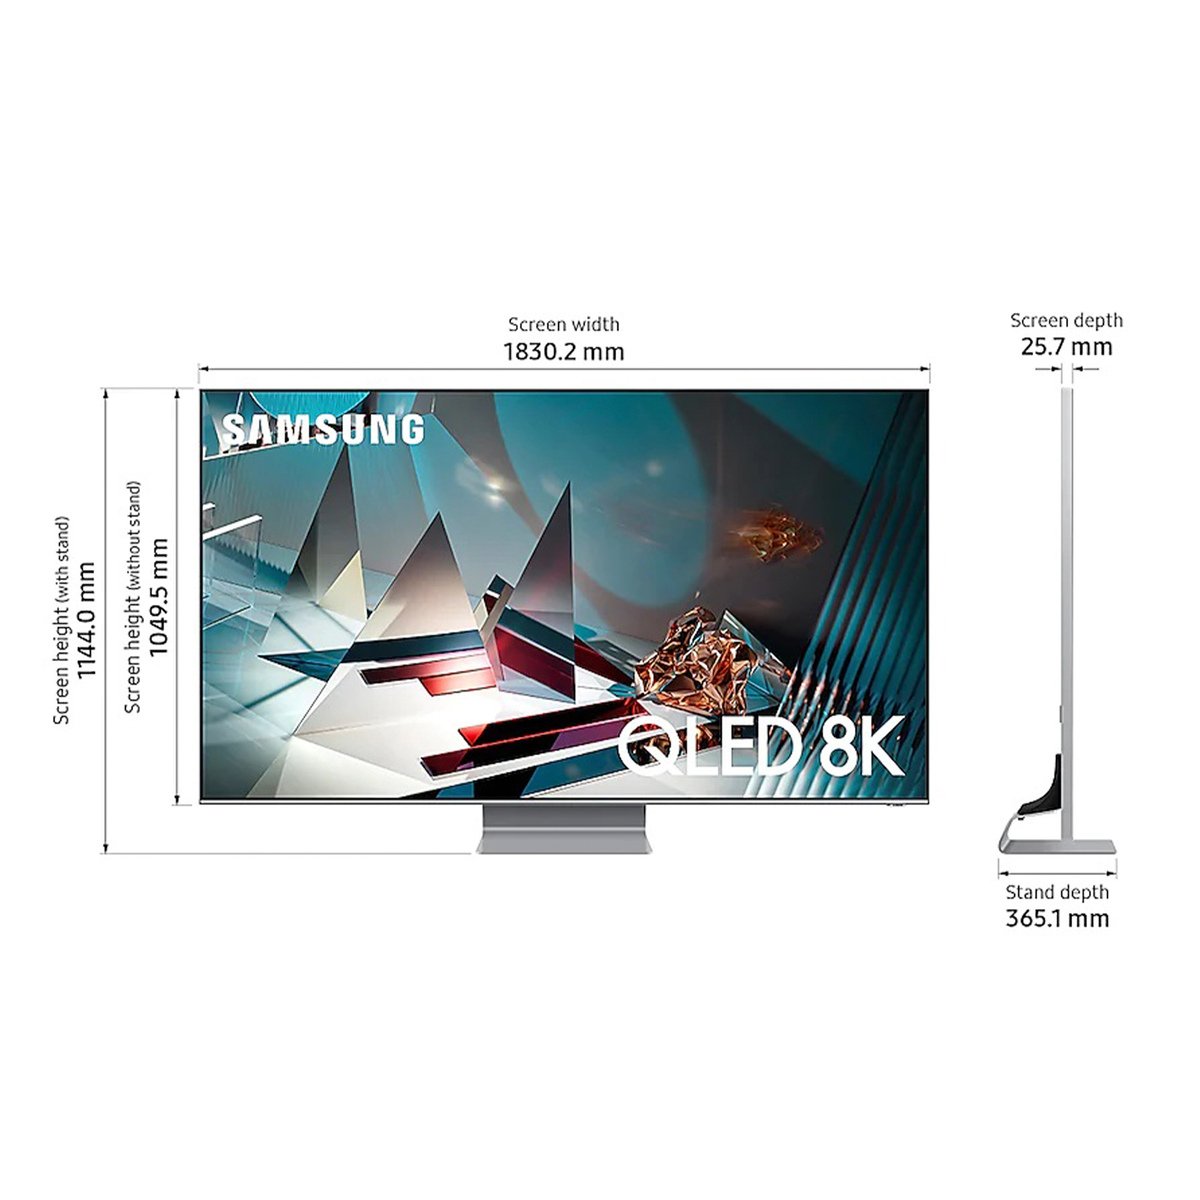 Samsung QLED TV QA65Q800TAUXZN 65Inches Series(2020)